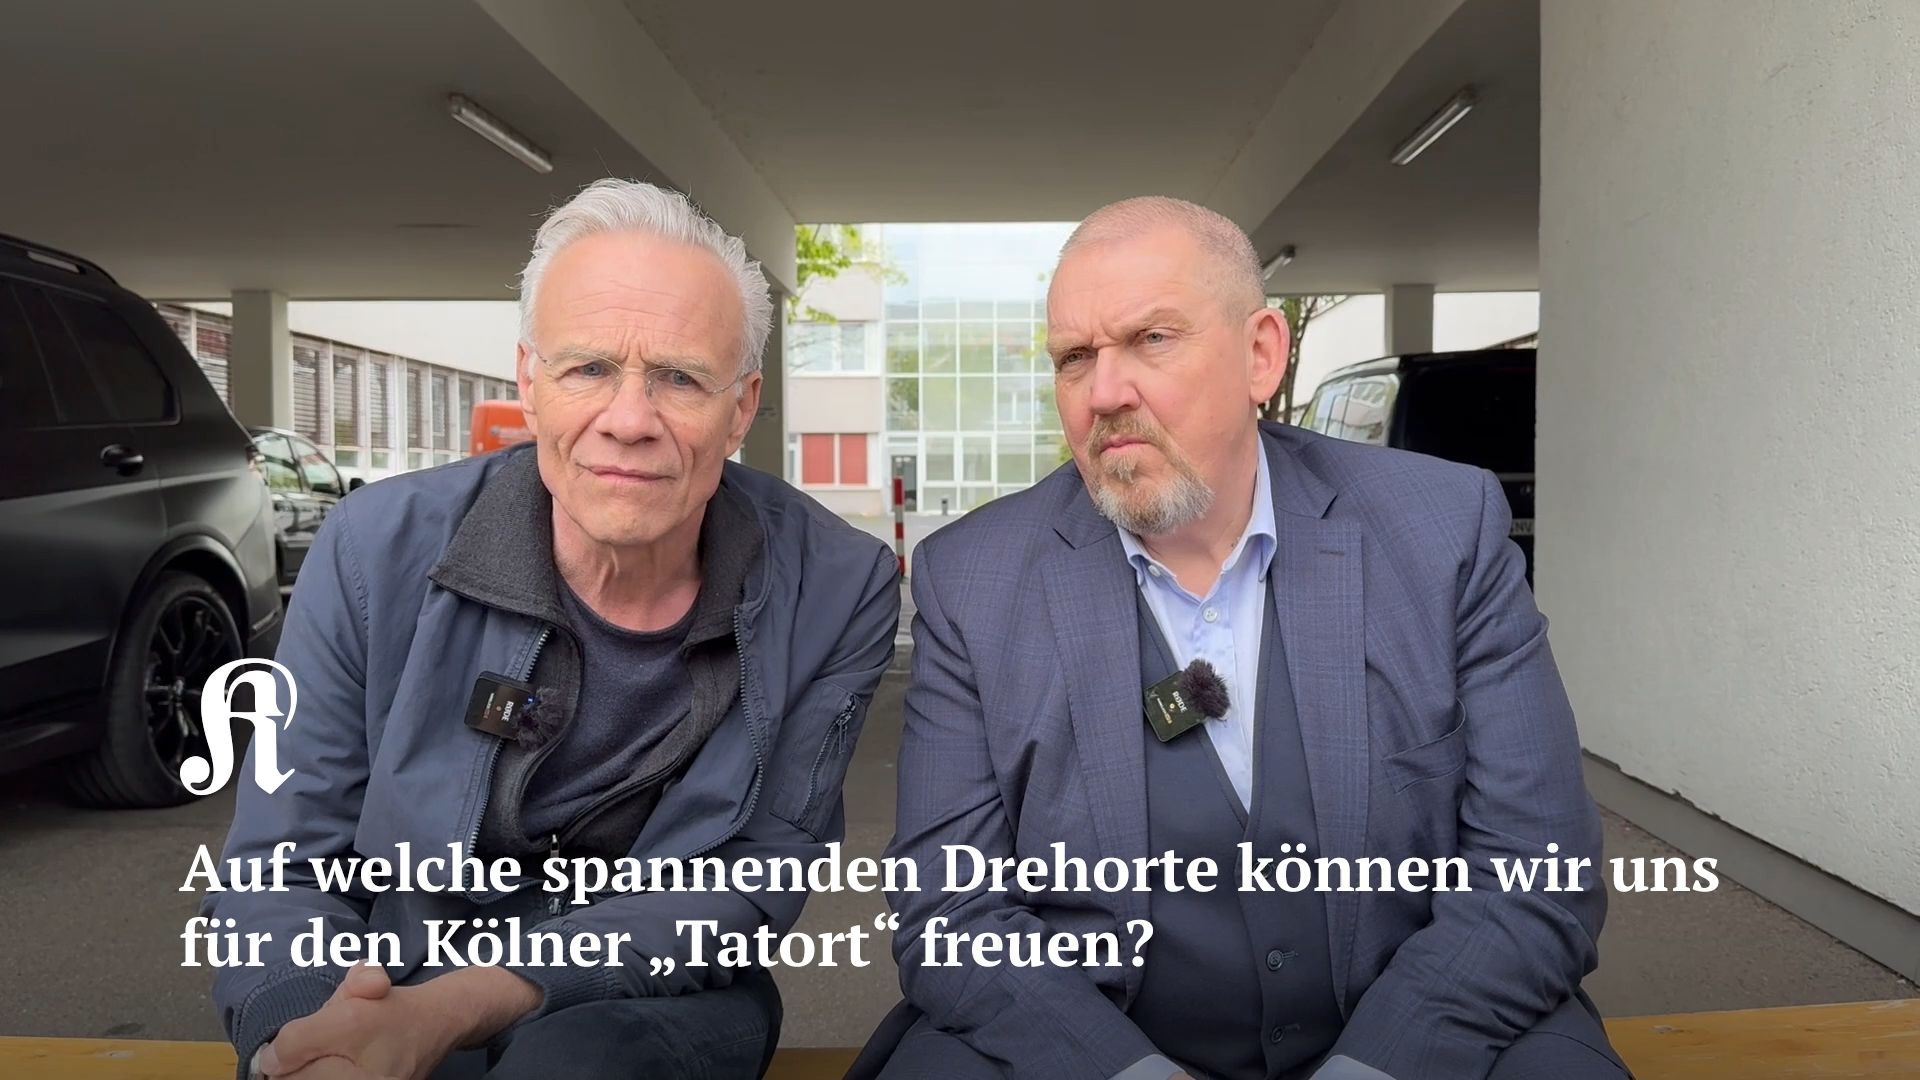 Ballauf & Schenk: Auf welche spannenden Drehorte können wir uns für den Kölner „Tatort“ freuen?